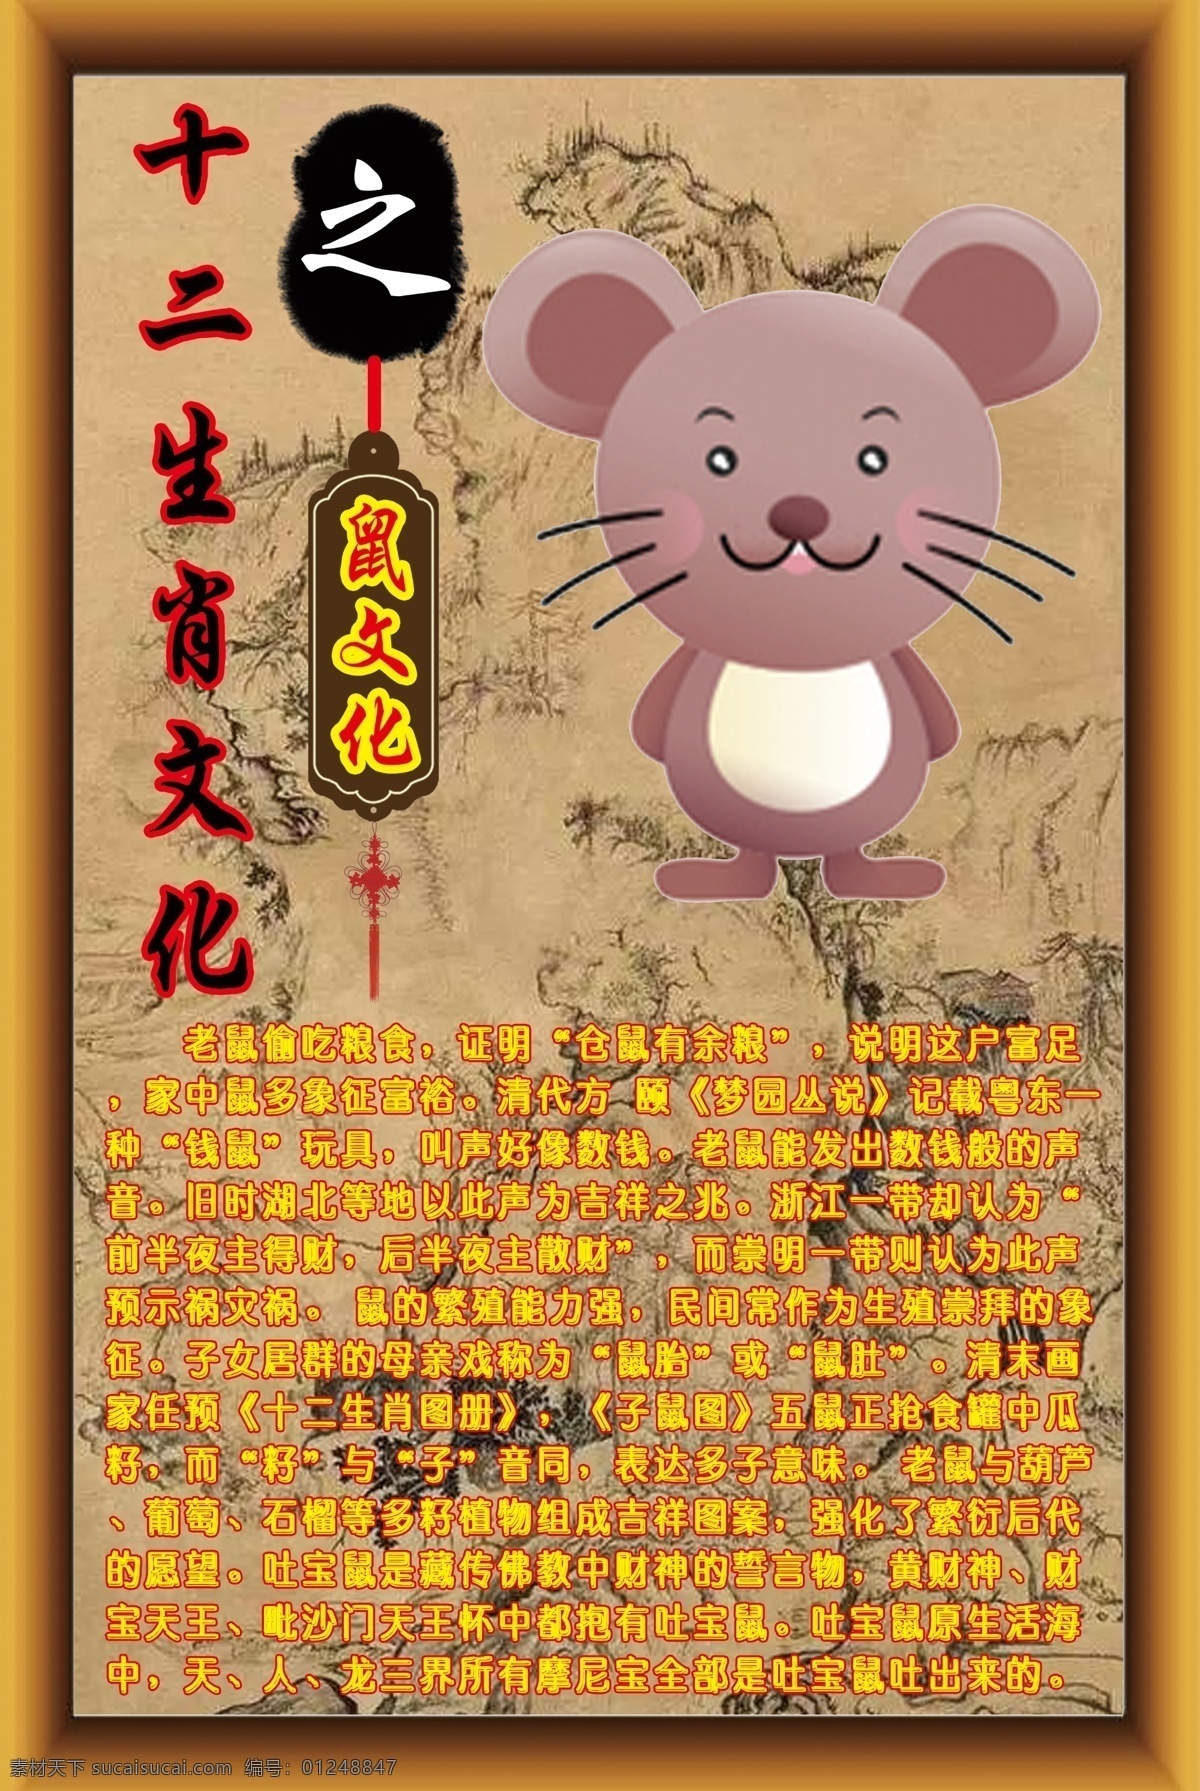 十二生肖 文化 鼠 十二 生肖 鼠文化 十二生肖文化 展板模板